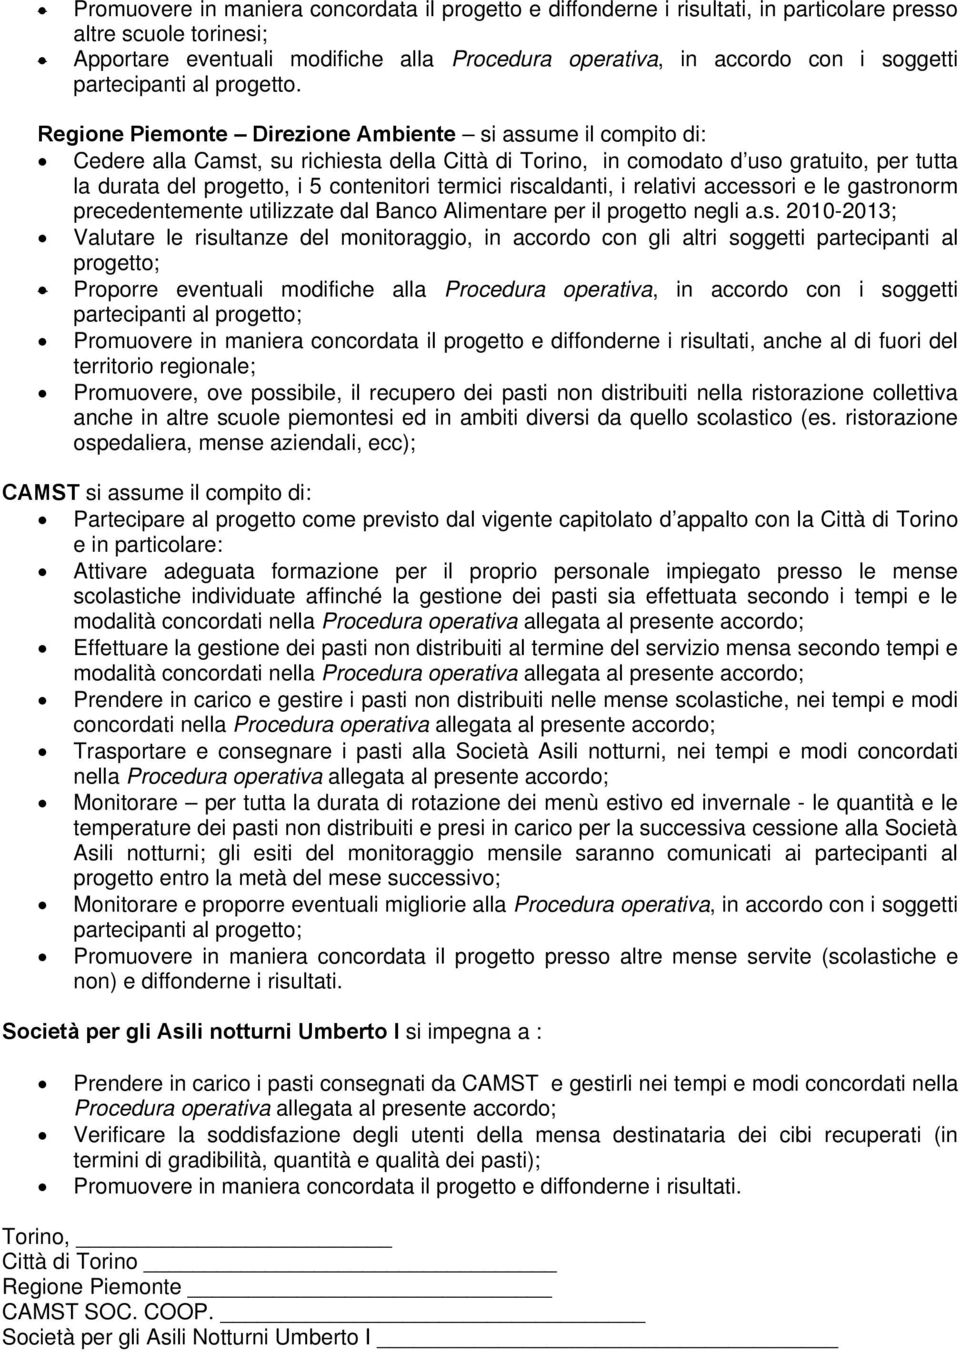 Regione Piemonte Direzione Ambiente si assume il compito di: Cedere alla Camst, su richiesta della Città di Torino, in comodato d uso gratuito, per tutta la durata del progetto, i 5 contenitori